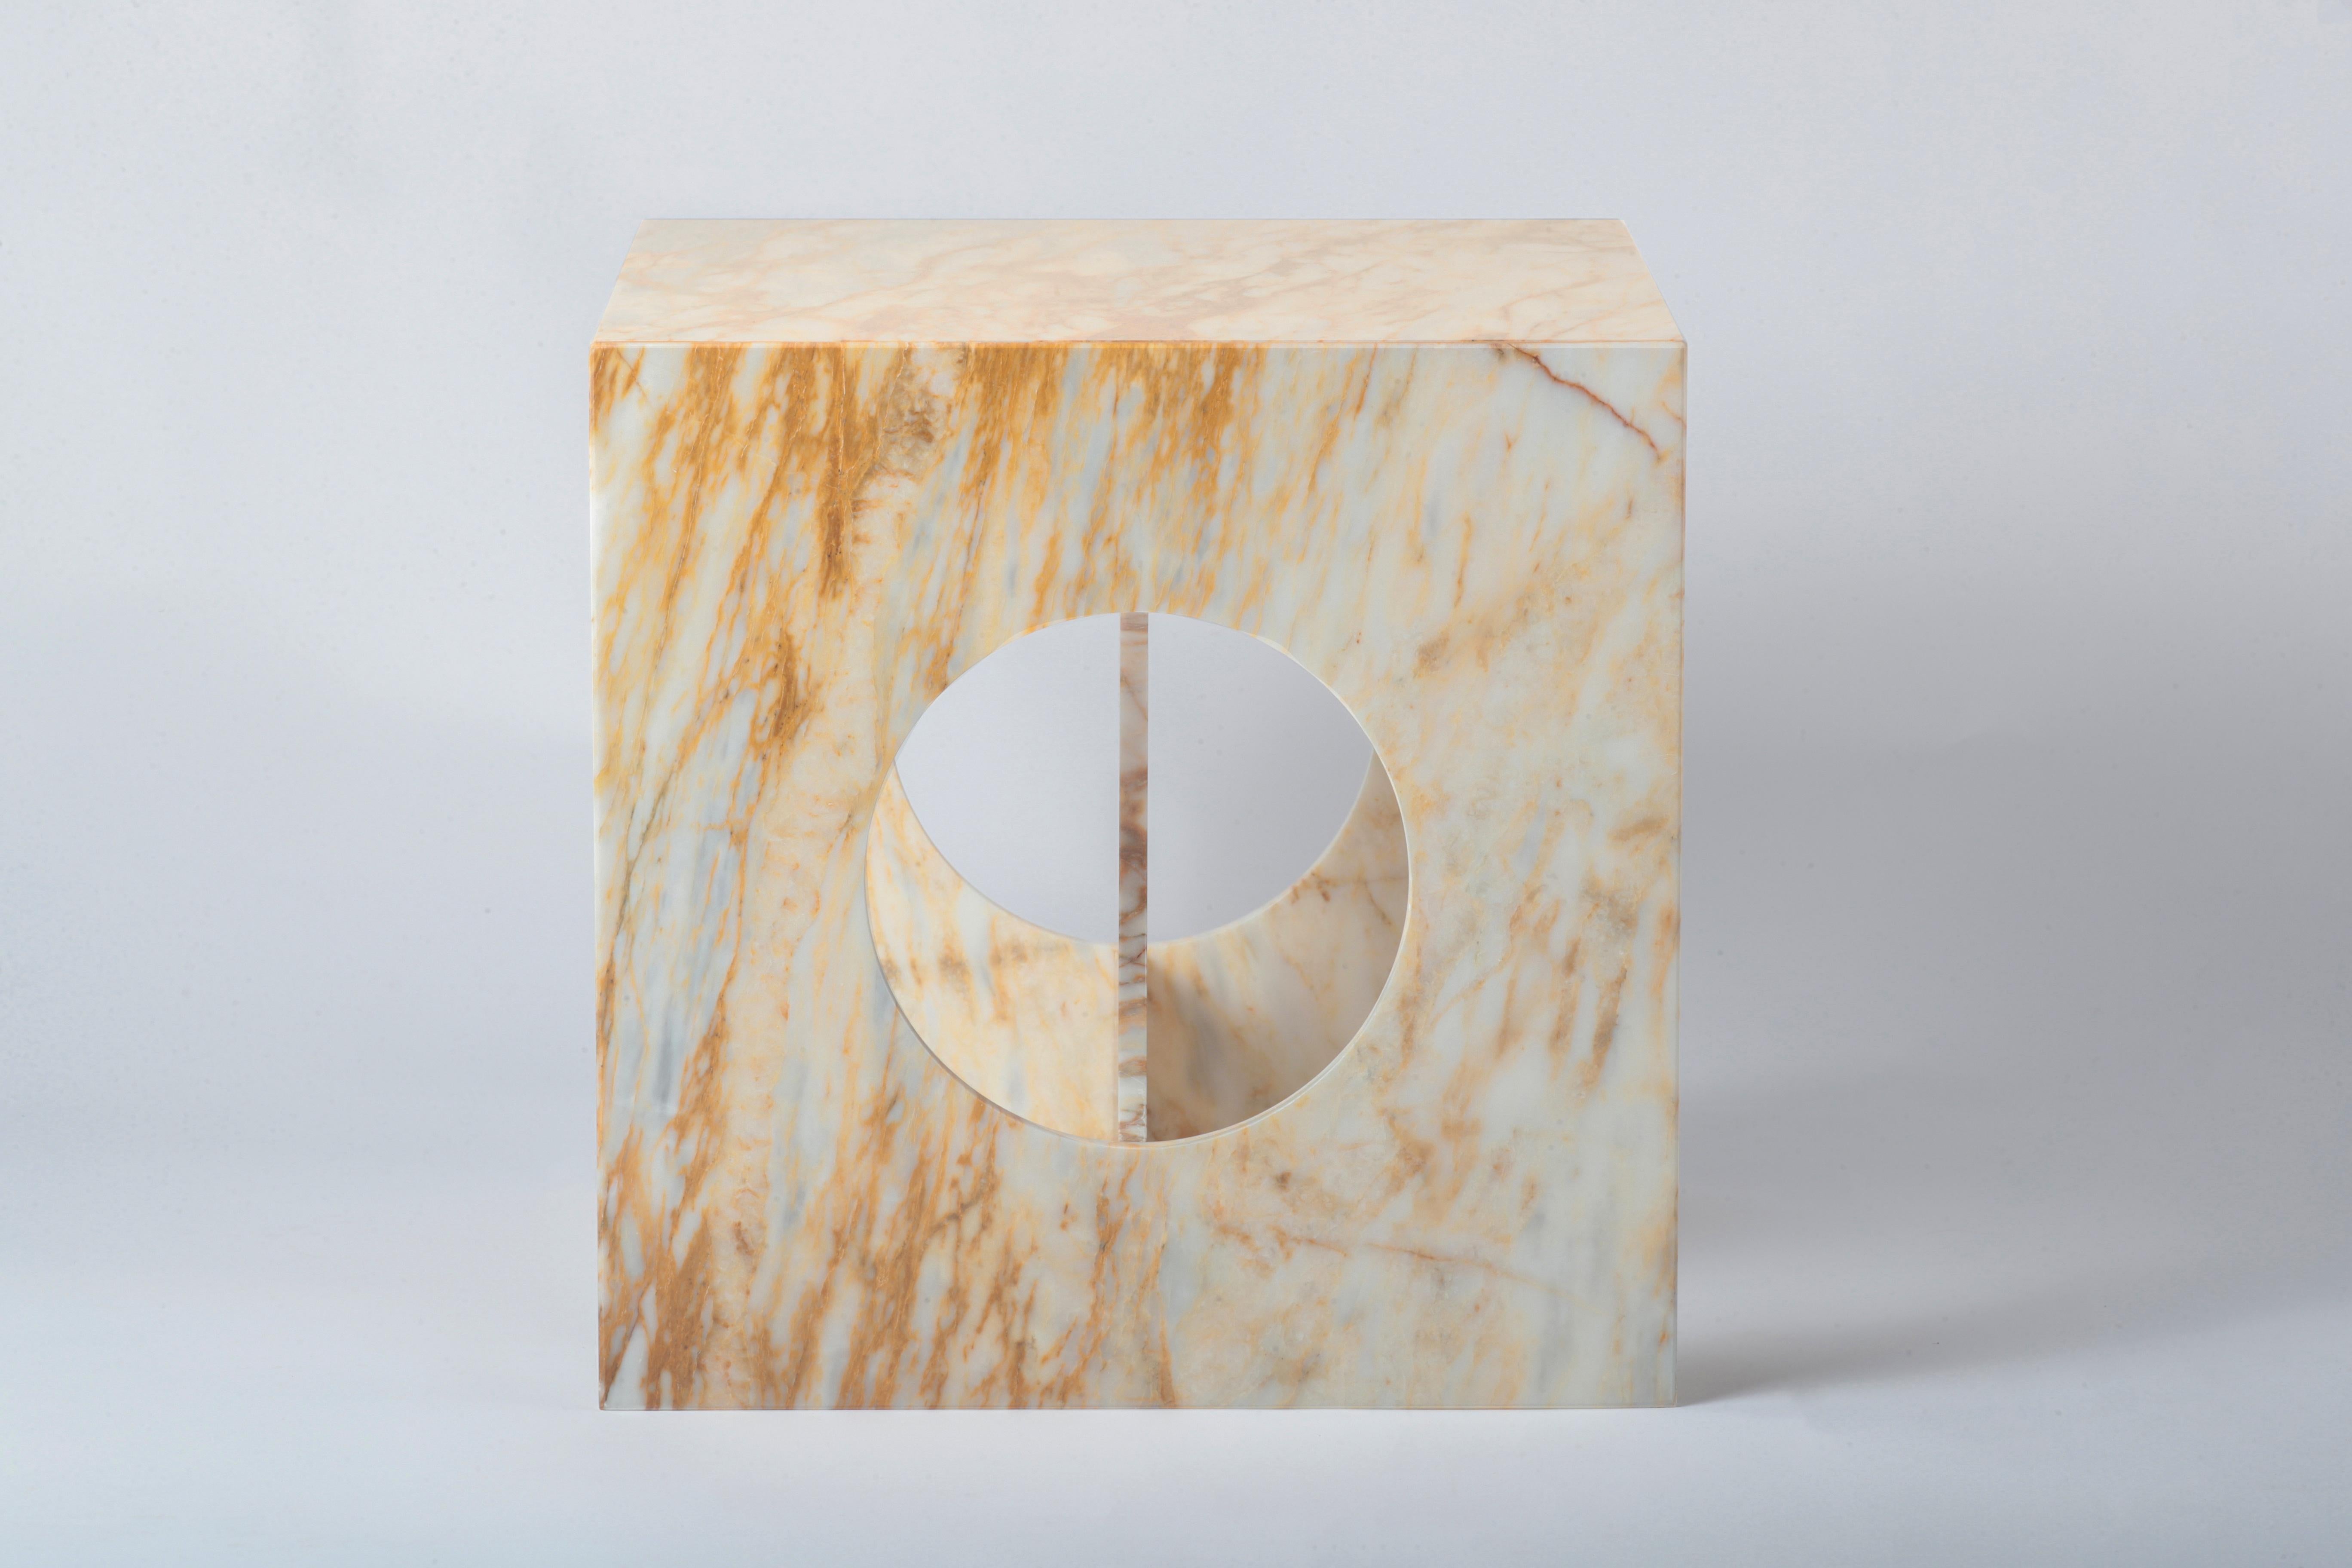 Le cube de forme parfaite devient plus caractérisé par les vides à l'intérieur. Tout en allégeant le marbre, les vides circulaires offrent également une facilité d'utilisation et permettent de le transporter plus facilement. Grâce à sa forme unique,